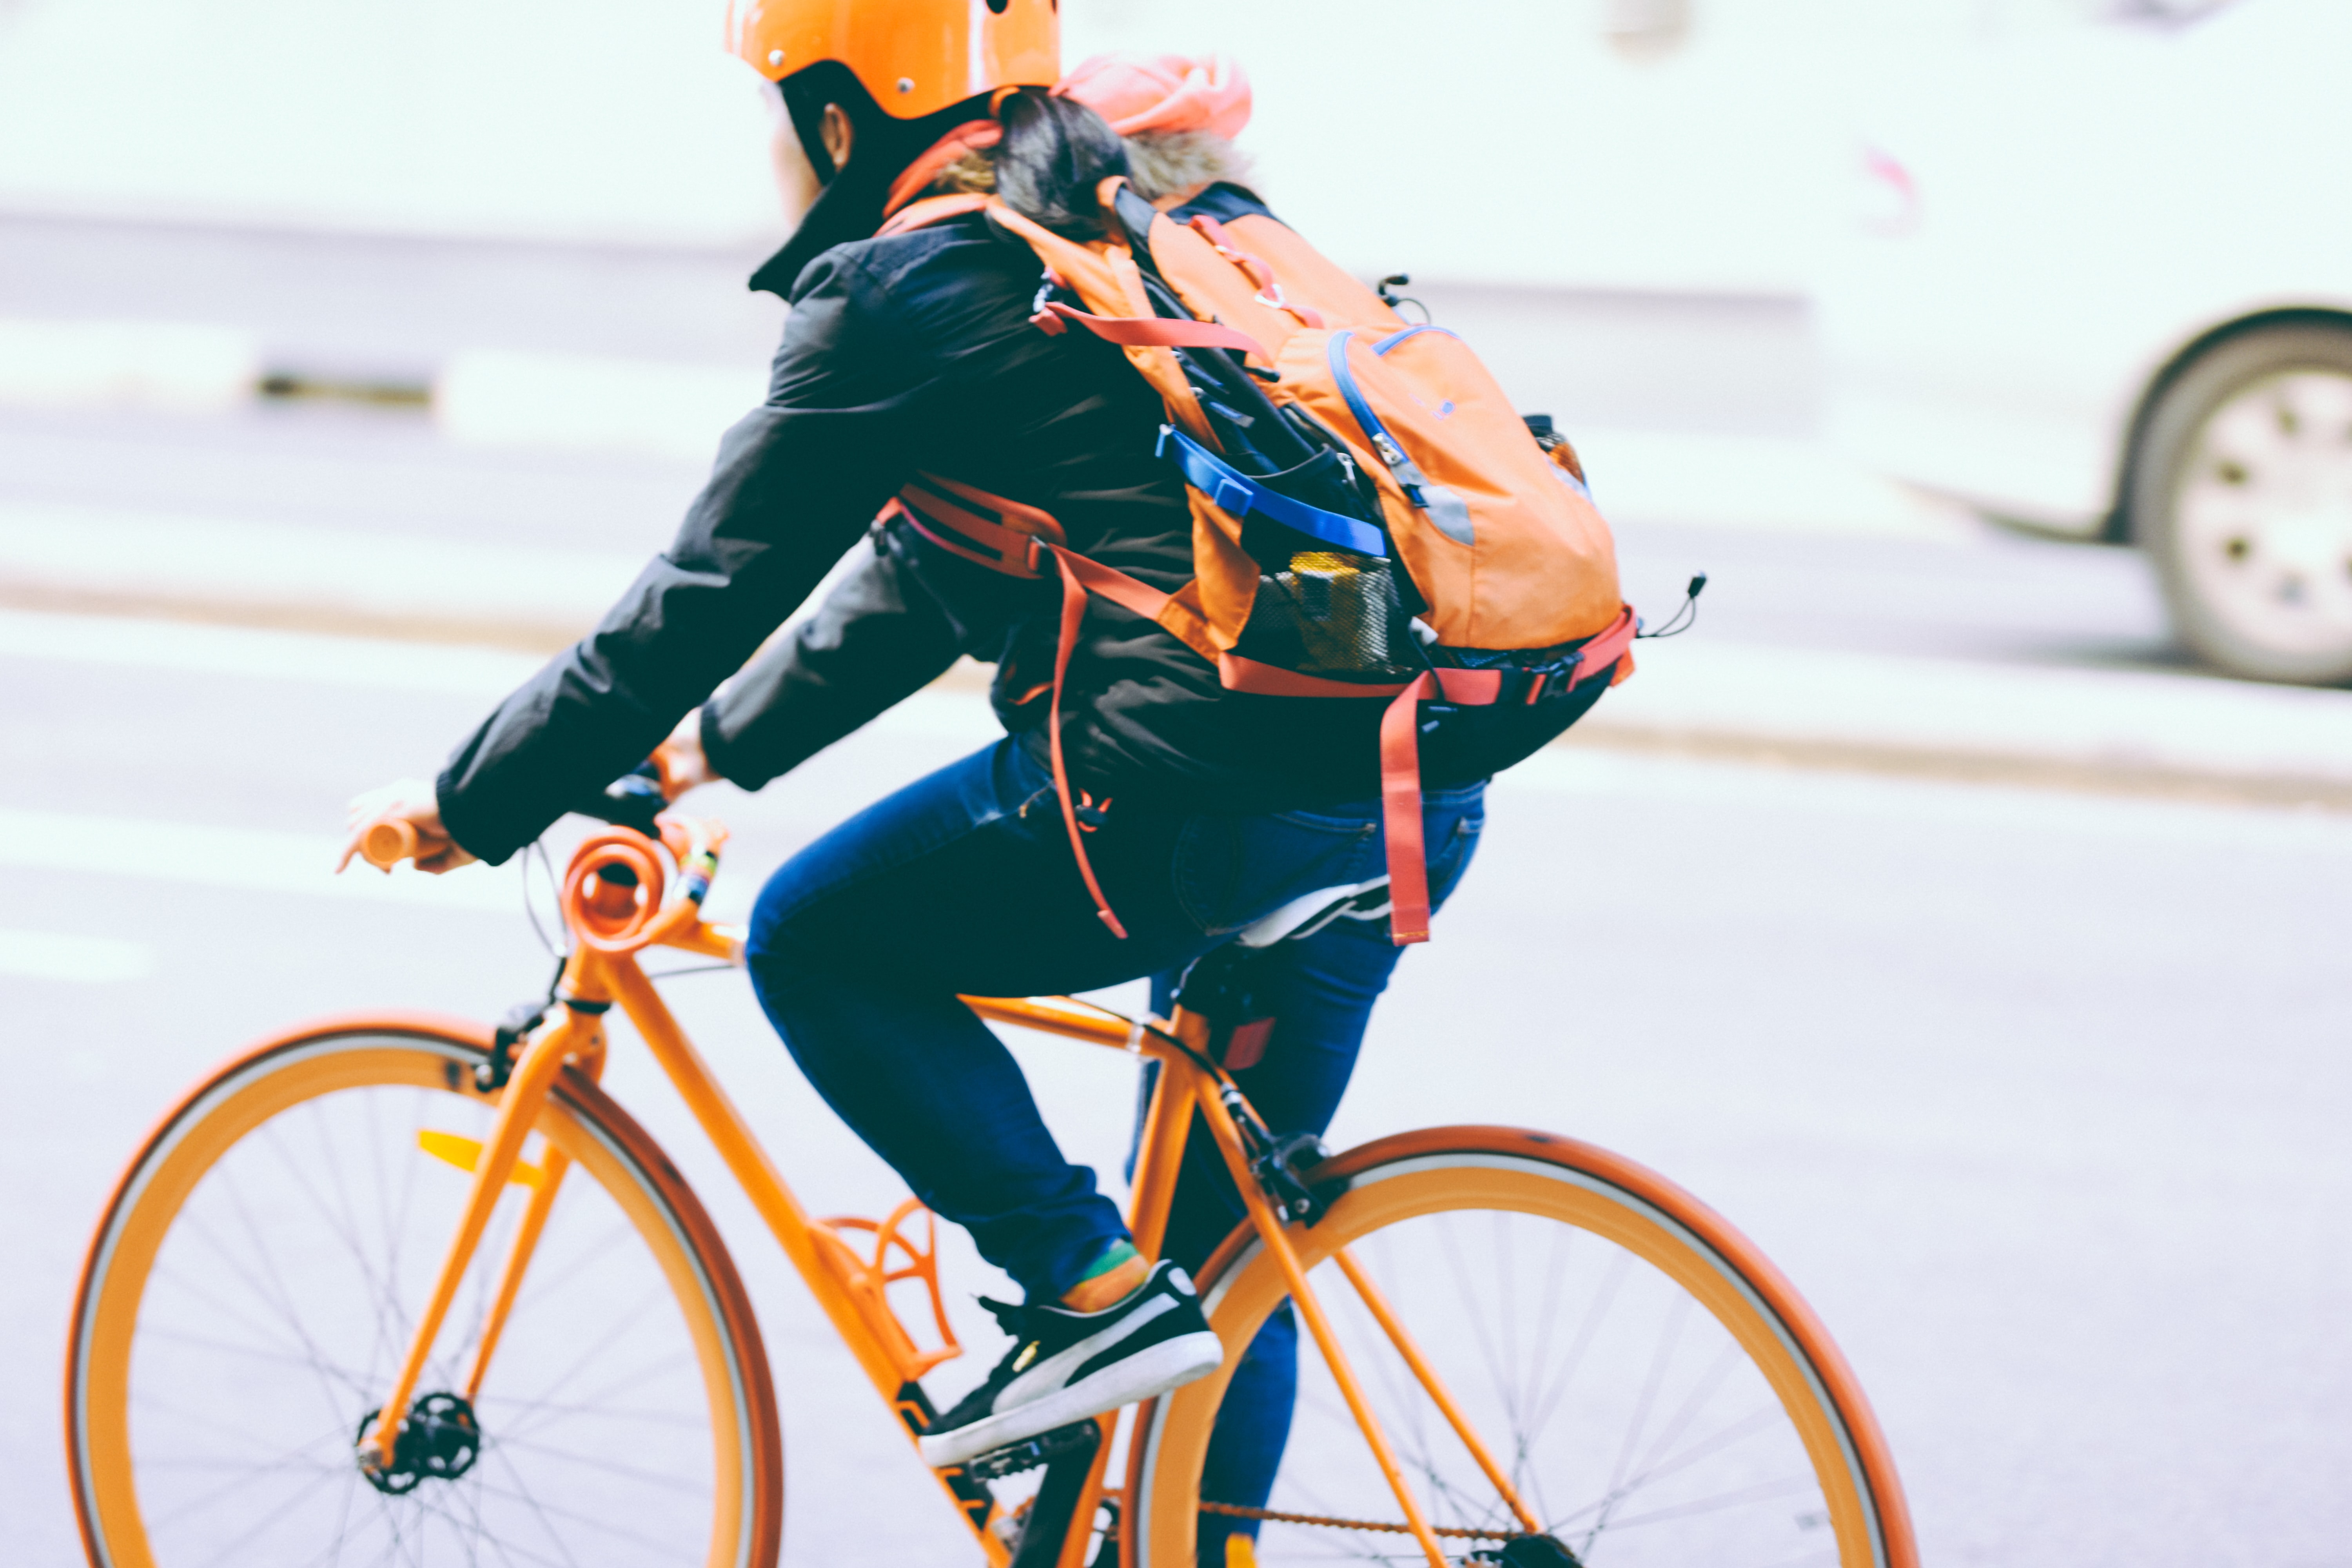 Blog Titel: Ich bin ein Fahrradhersteller – wie digitalisiere ich mein Unternehmen?. Zusammenfassung: undefined